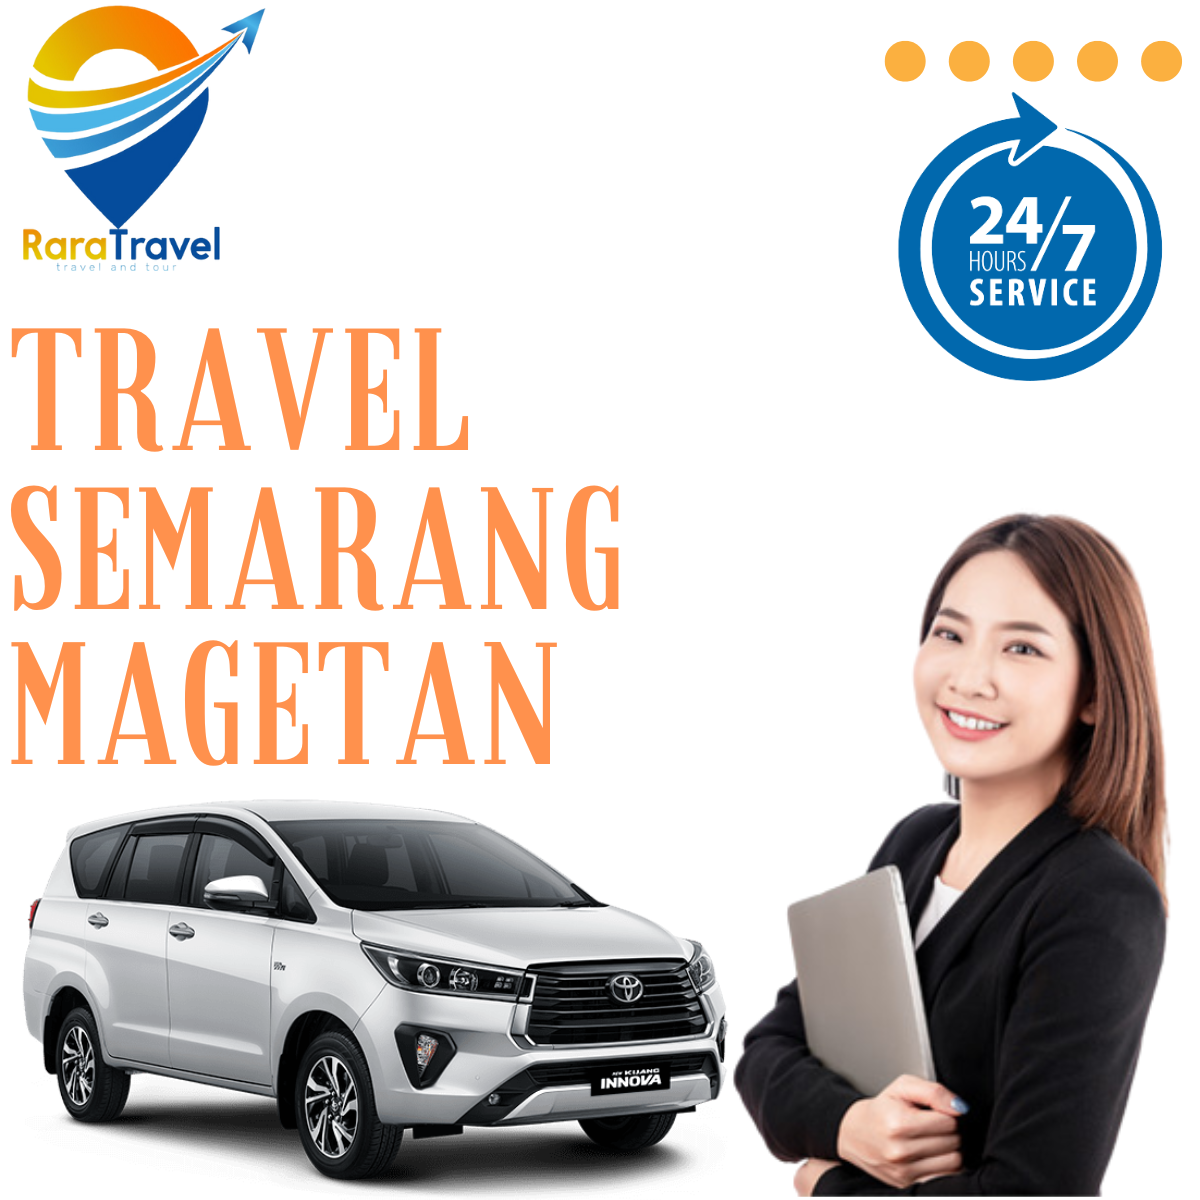 Travel Semarang Magetan: Harga Tiket Murah, Layanan 24 Jam